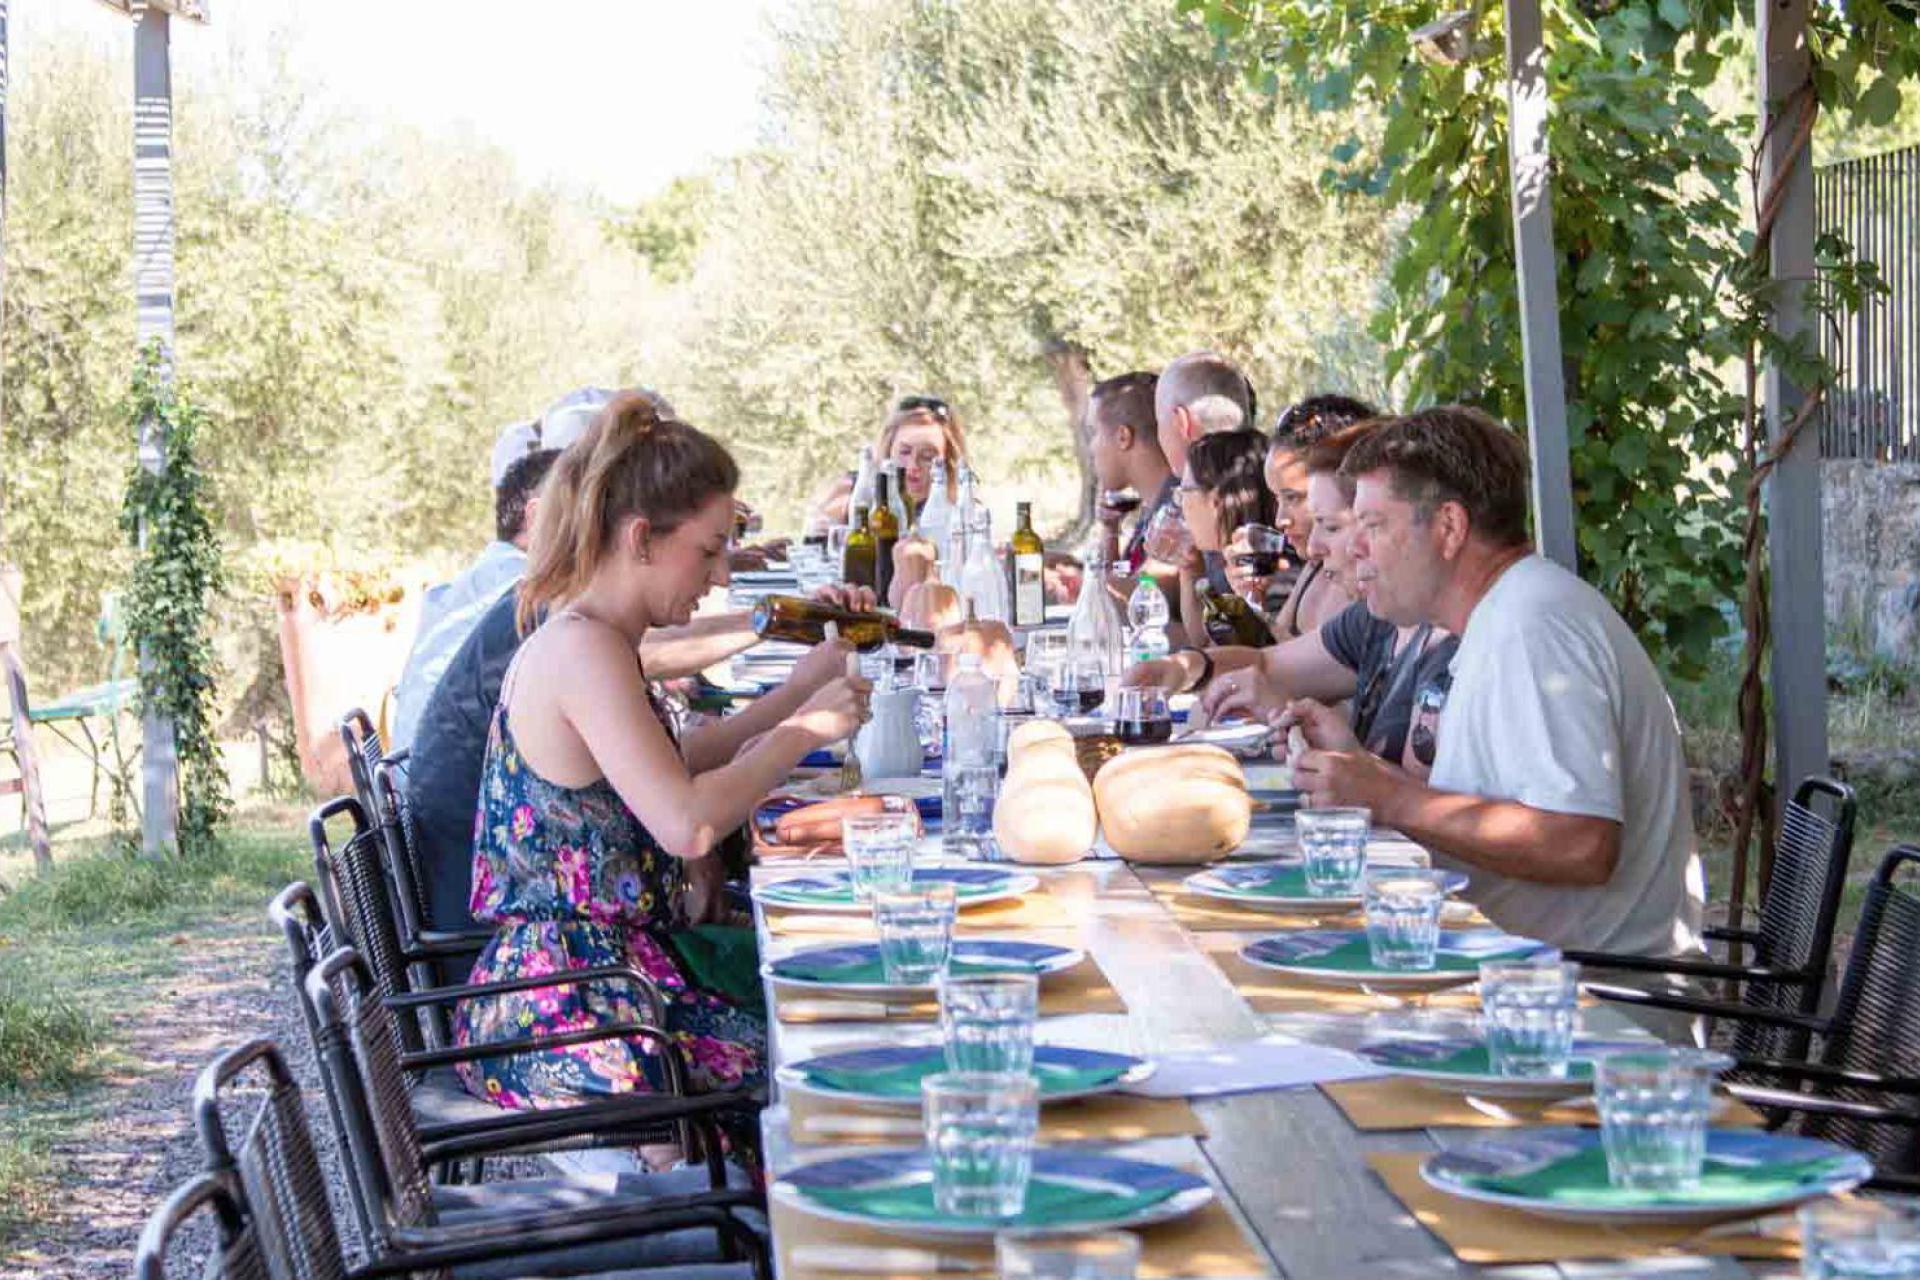 Agriturismo Tuscany Wonderful agriturismo near Pienza with restaurant